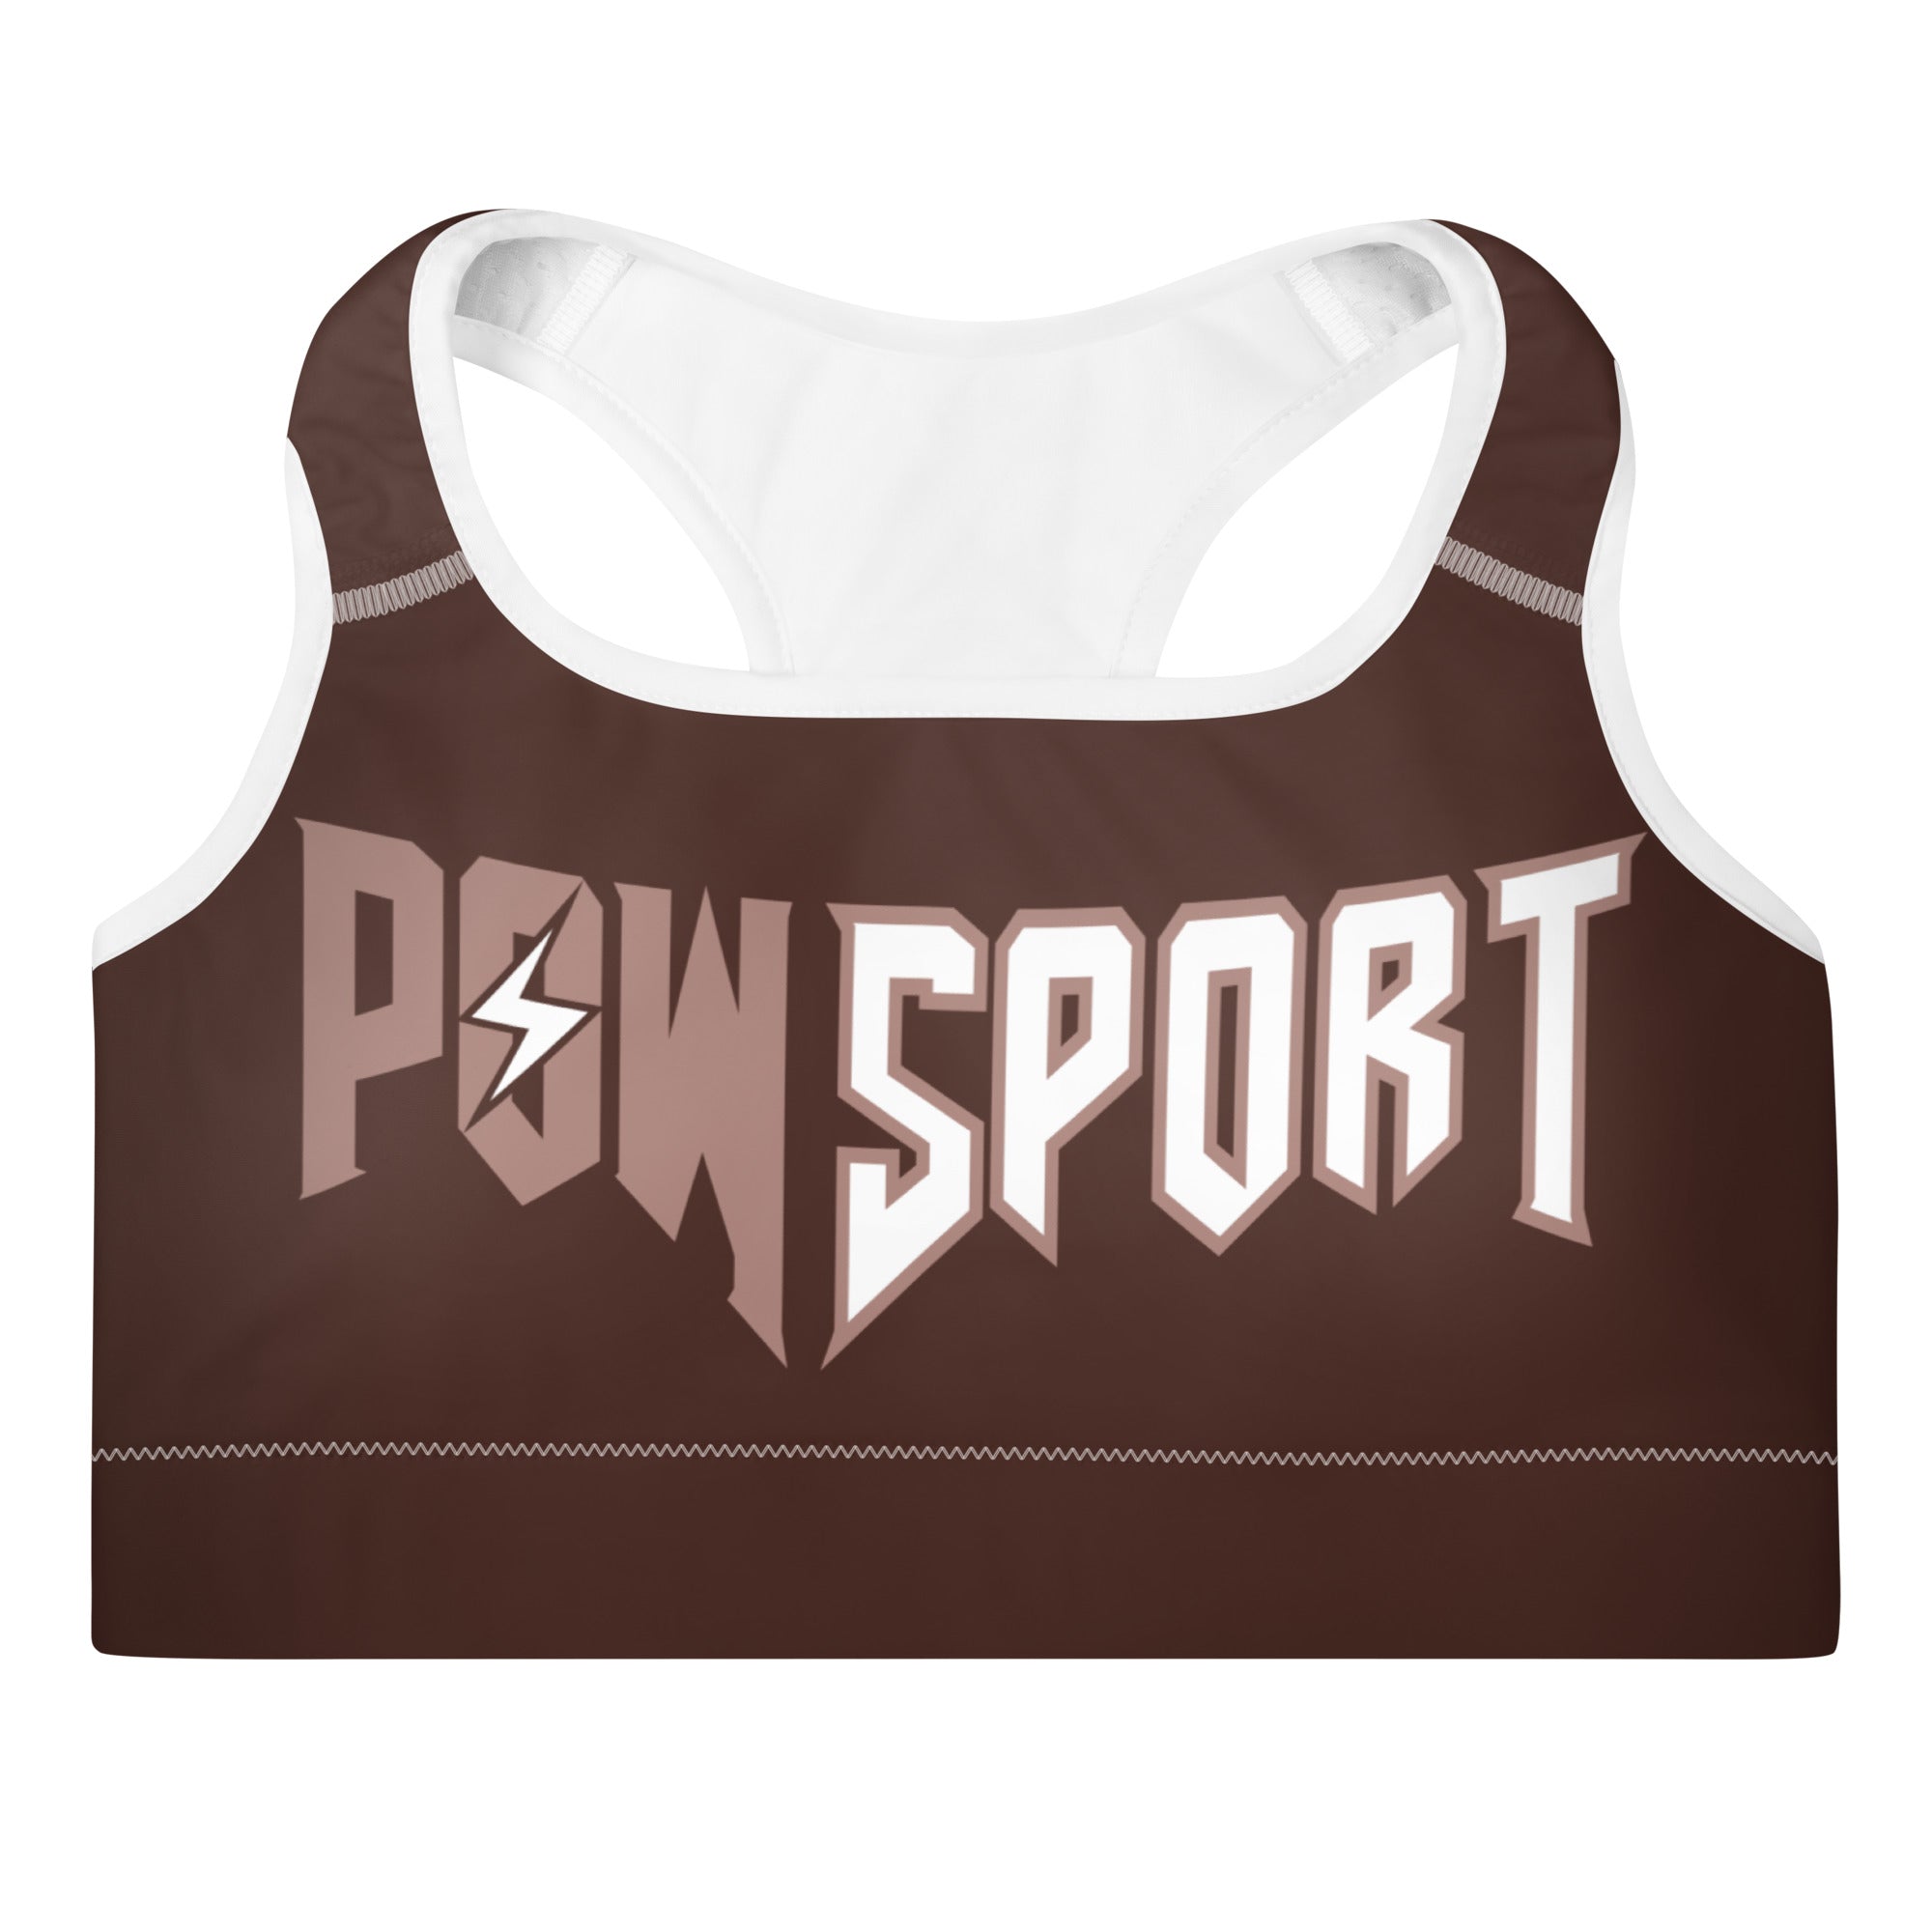 POW-Sport jogging top